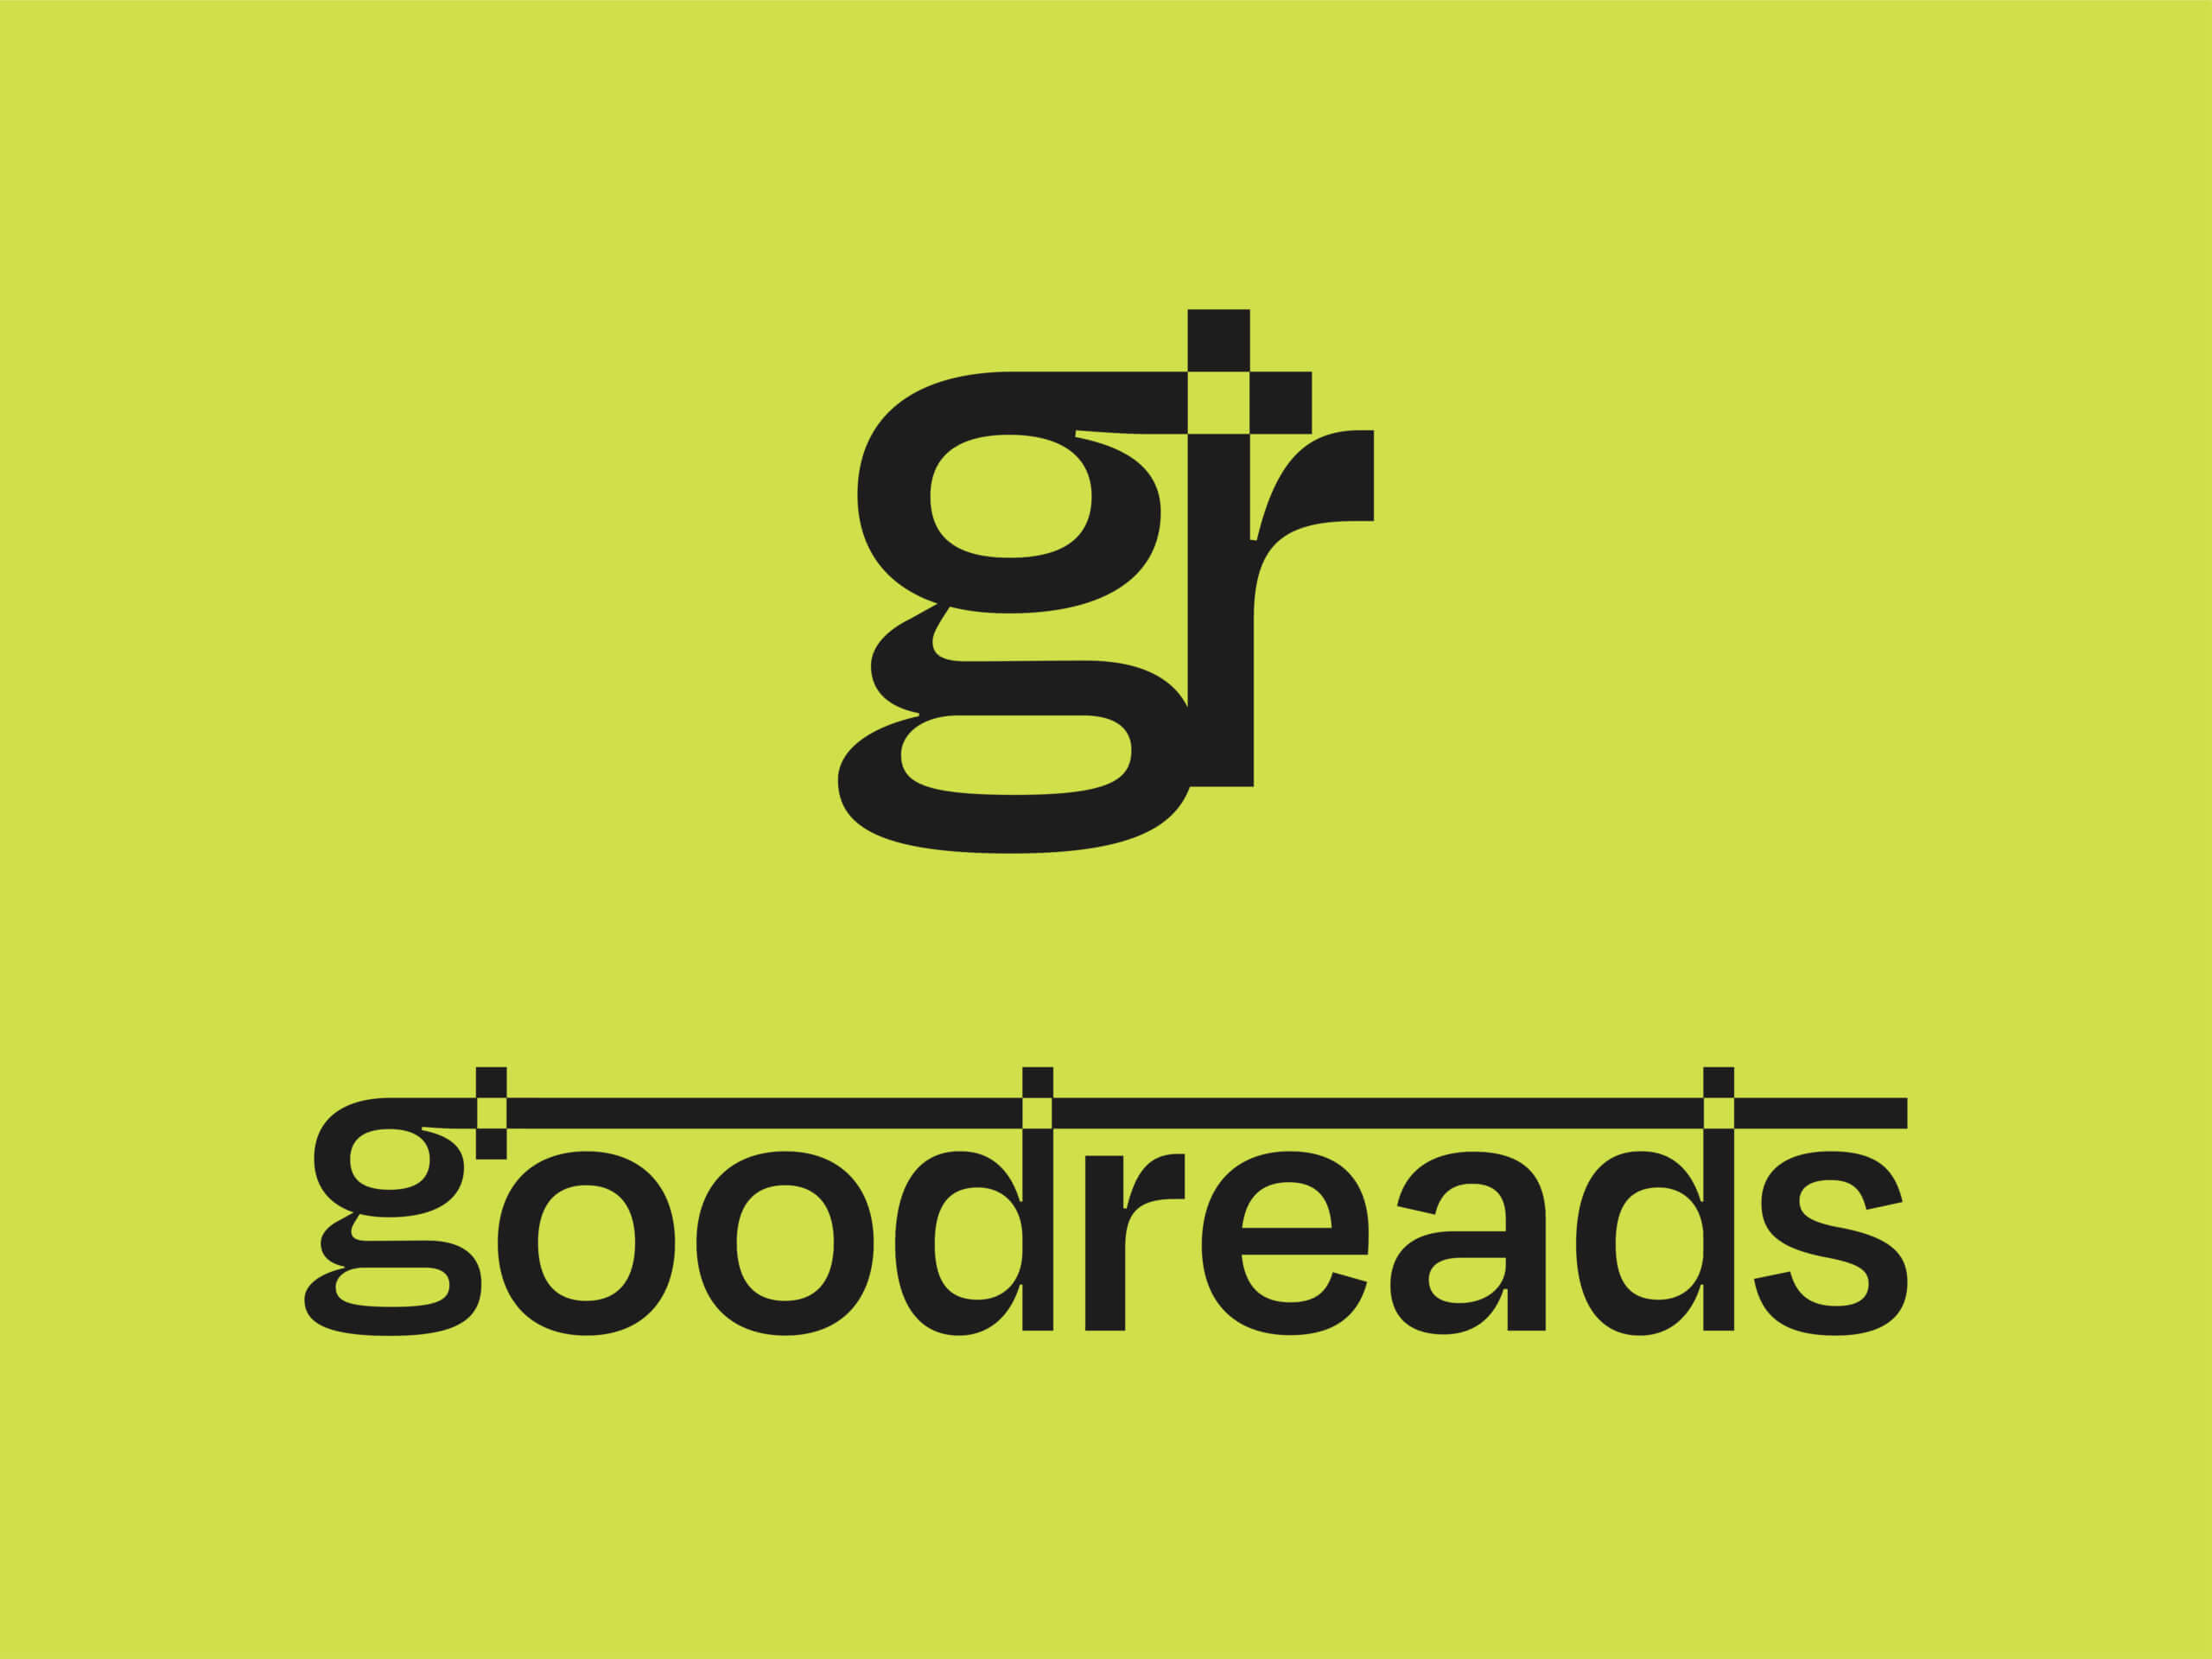 GoodReads-App-Portfolio-01-1